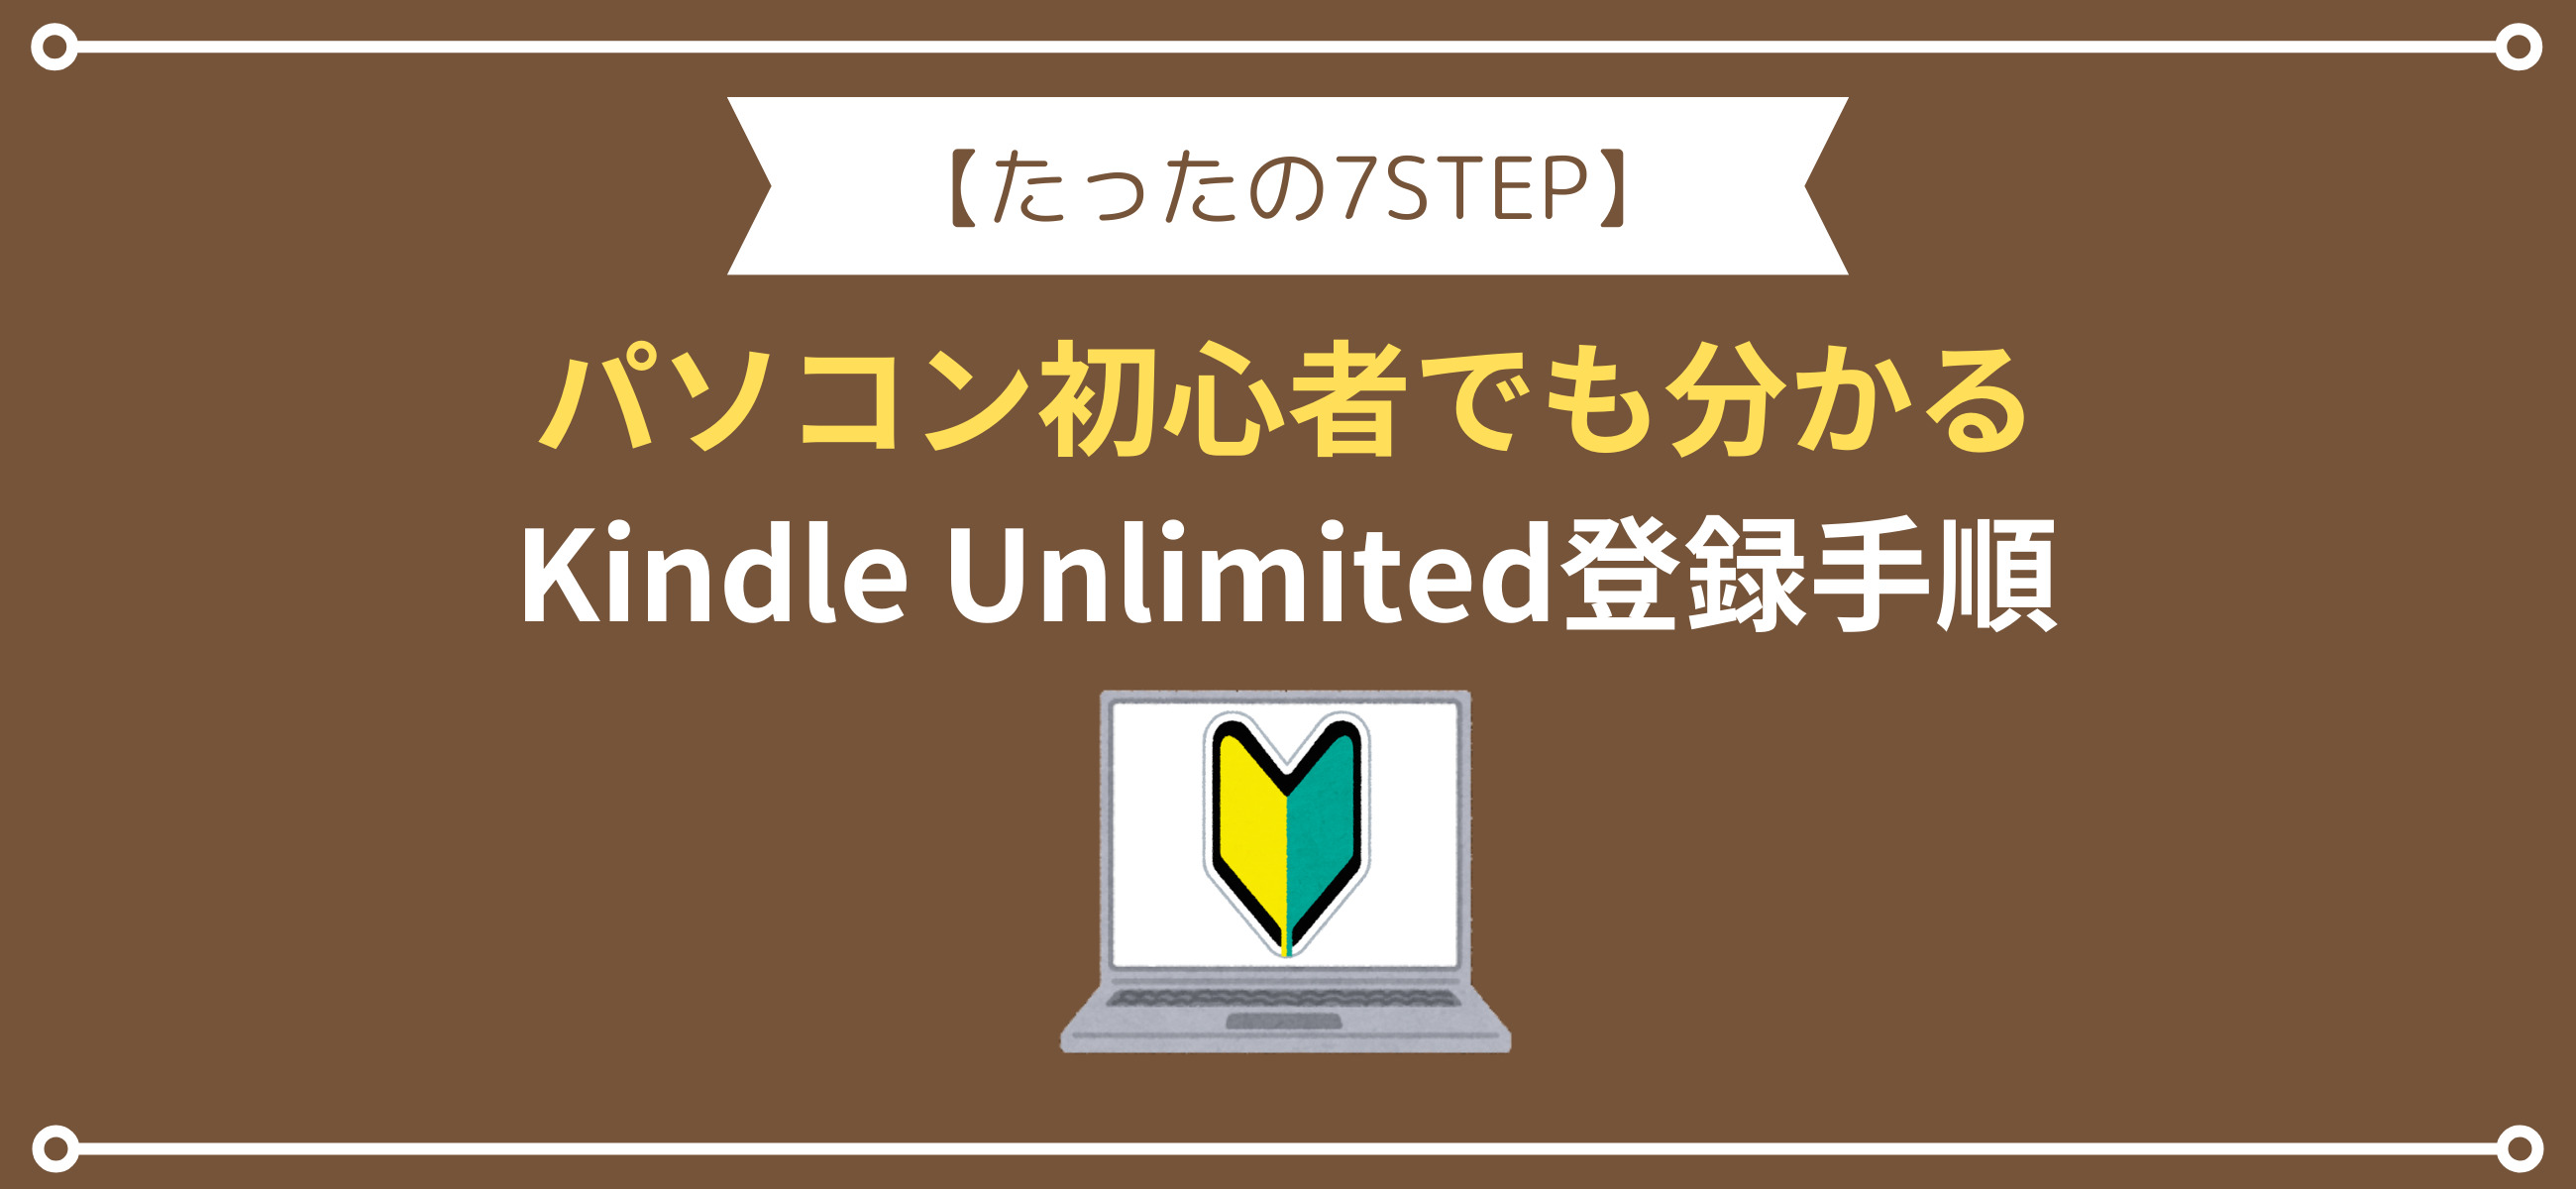 【たったの7STEP】Kindle Unlimitedの登録手順を一から解説